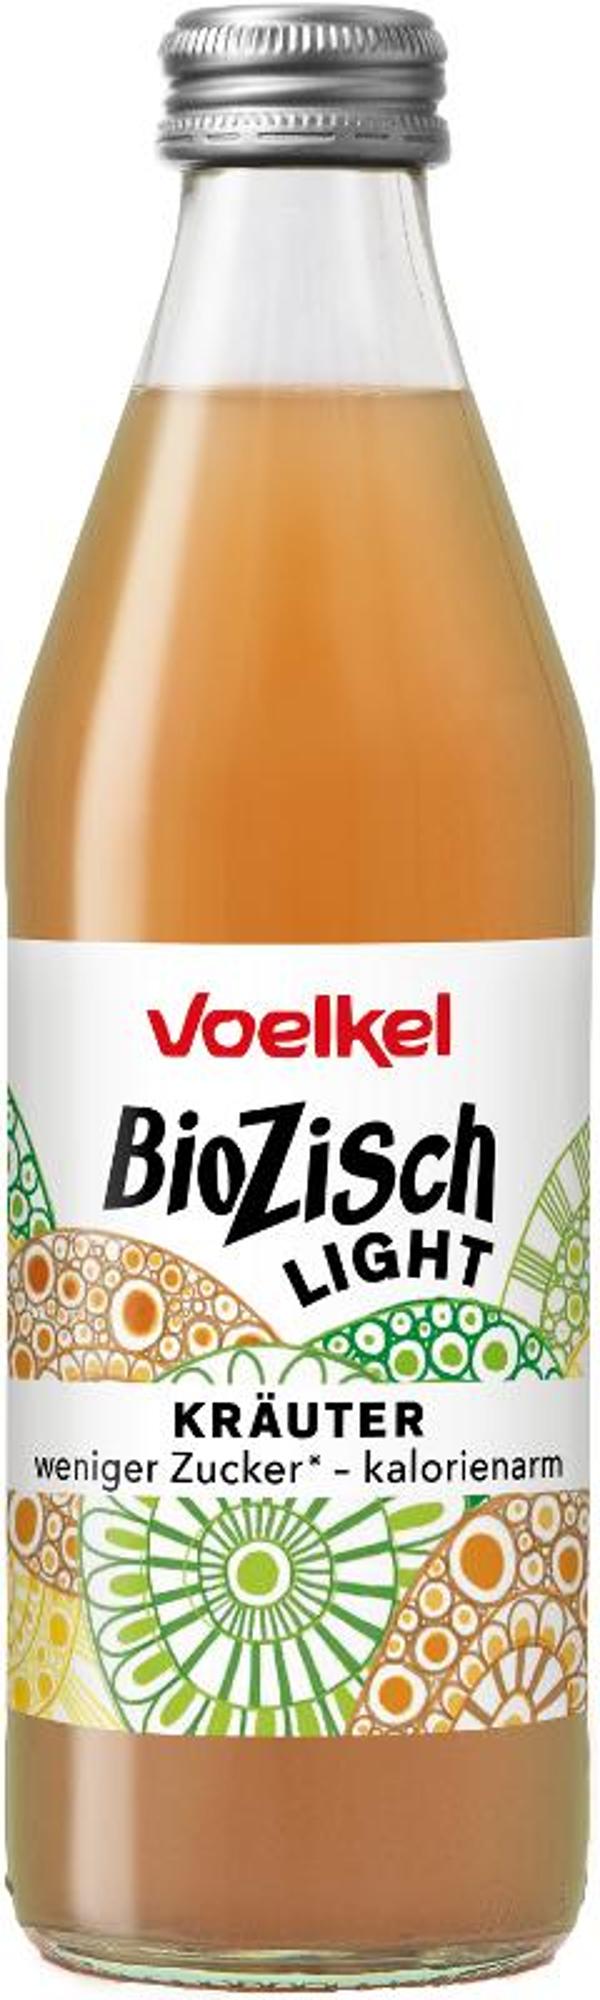 Produktfoto zu BioZisch Light Kräuter 0,33l Voelkel